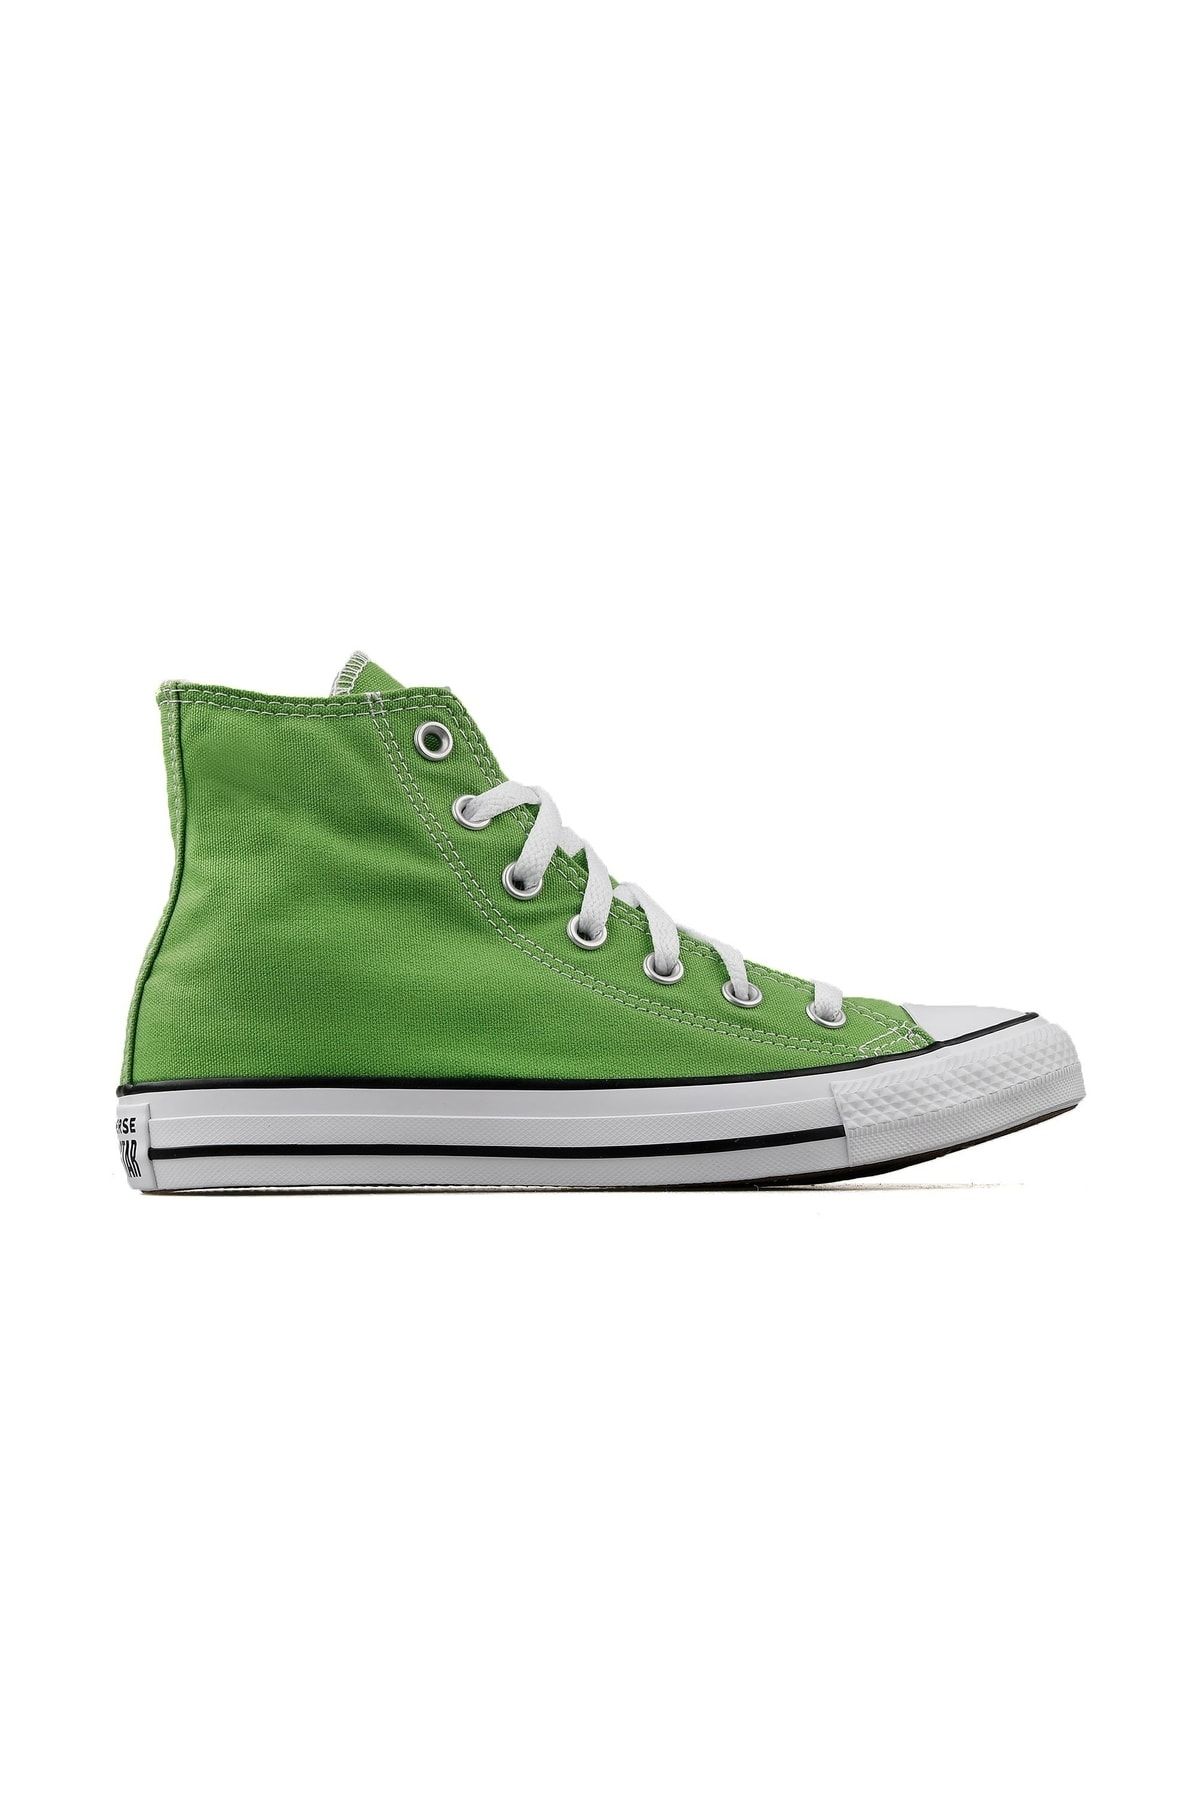 Converse Chuck Taylor All Star Kadın Günlük Ayakkabı 172687c Yeşil